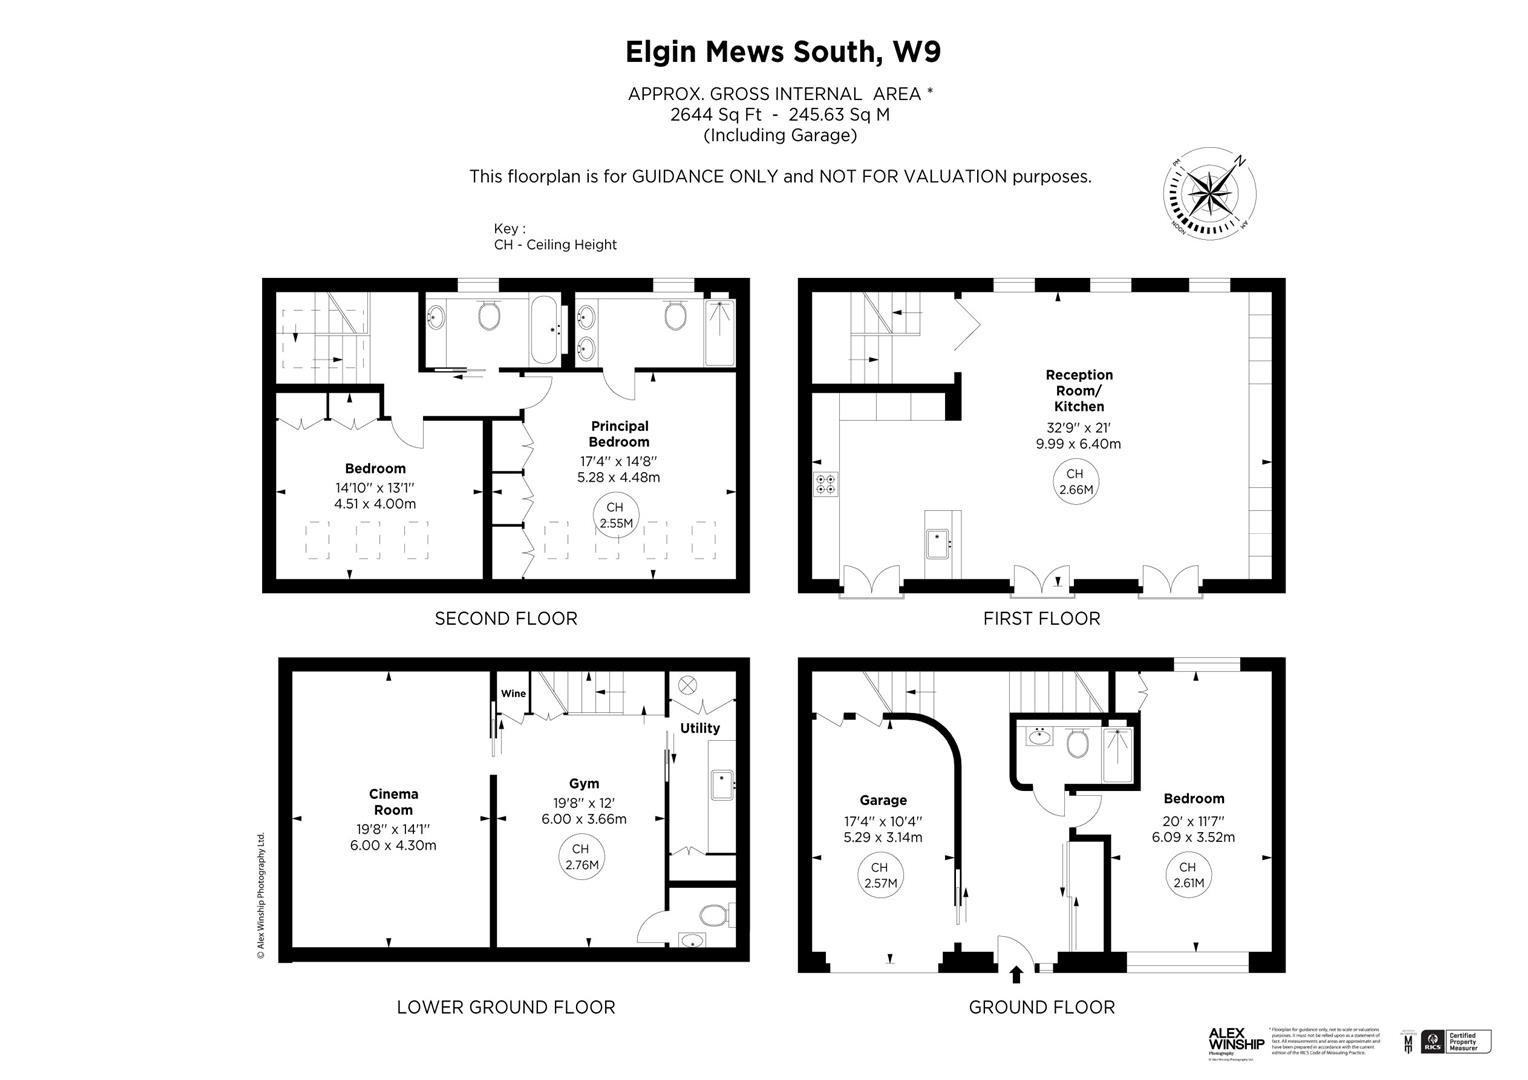 sold-elgin-mews-south-london-336-floorview1